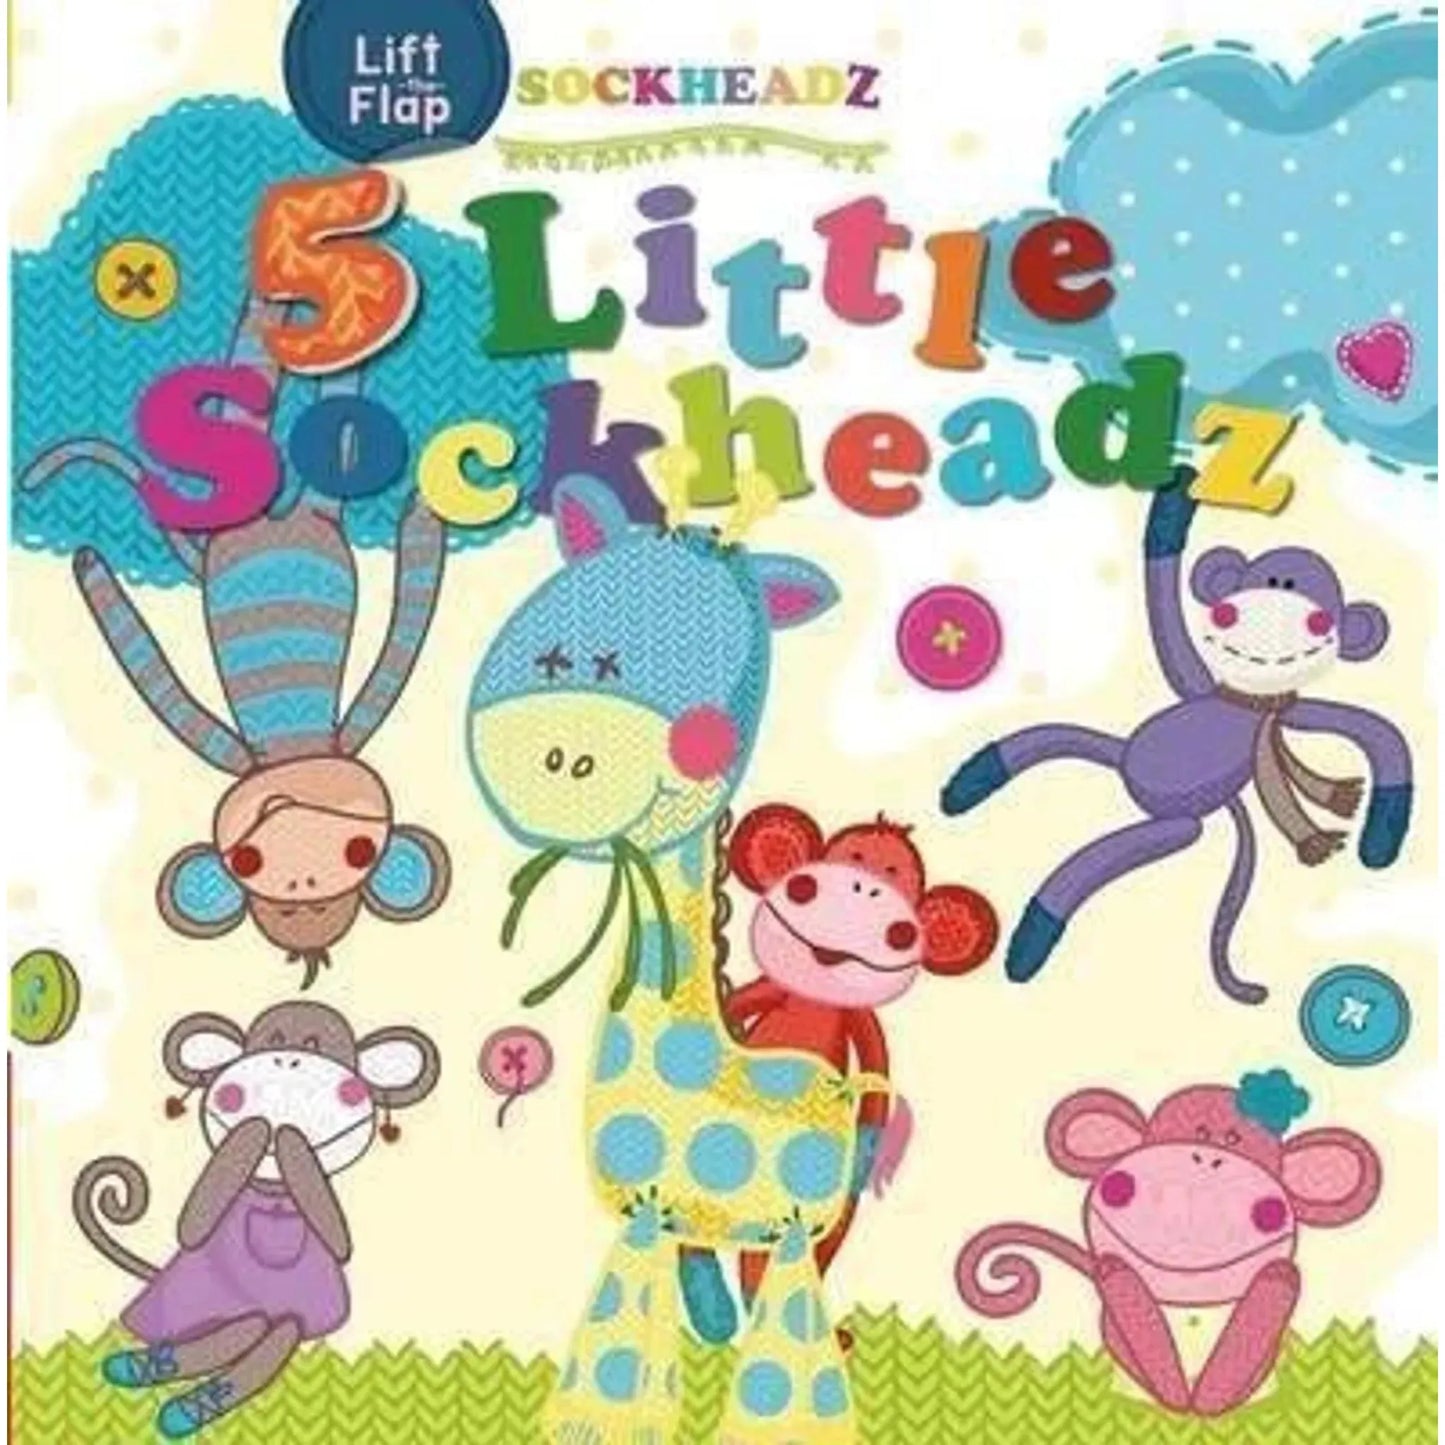 5 Little Sockheadz - Lift The Flap - Toybox Tales